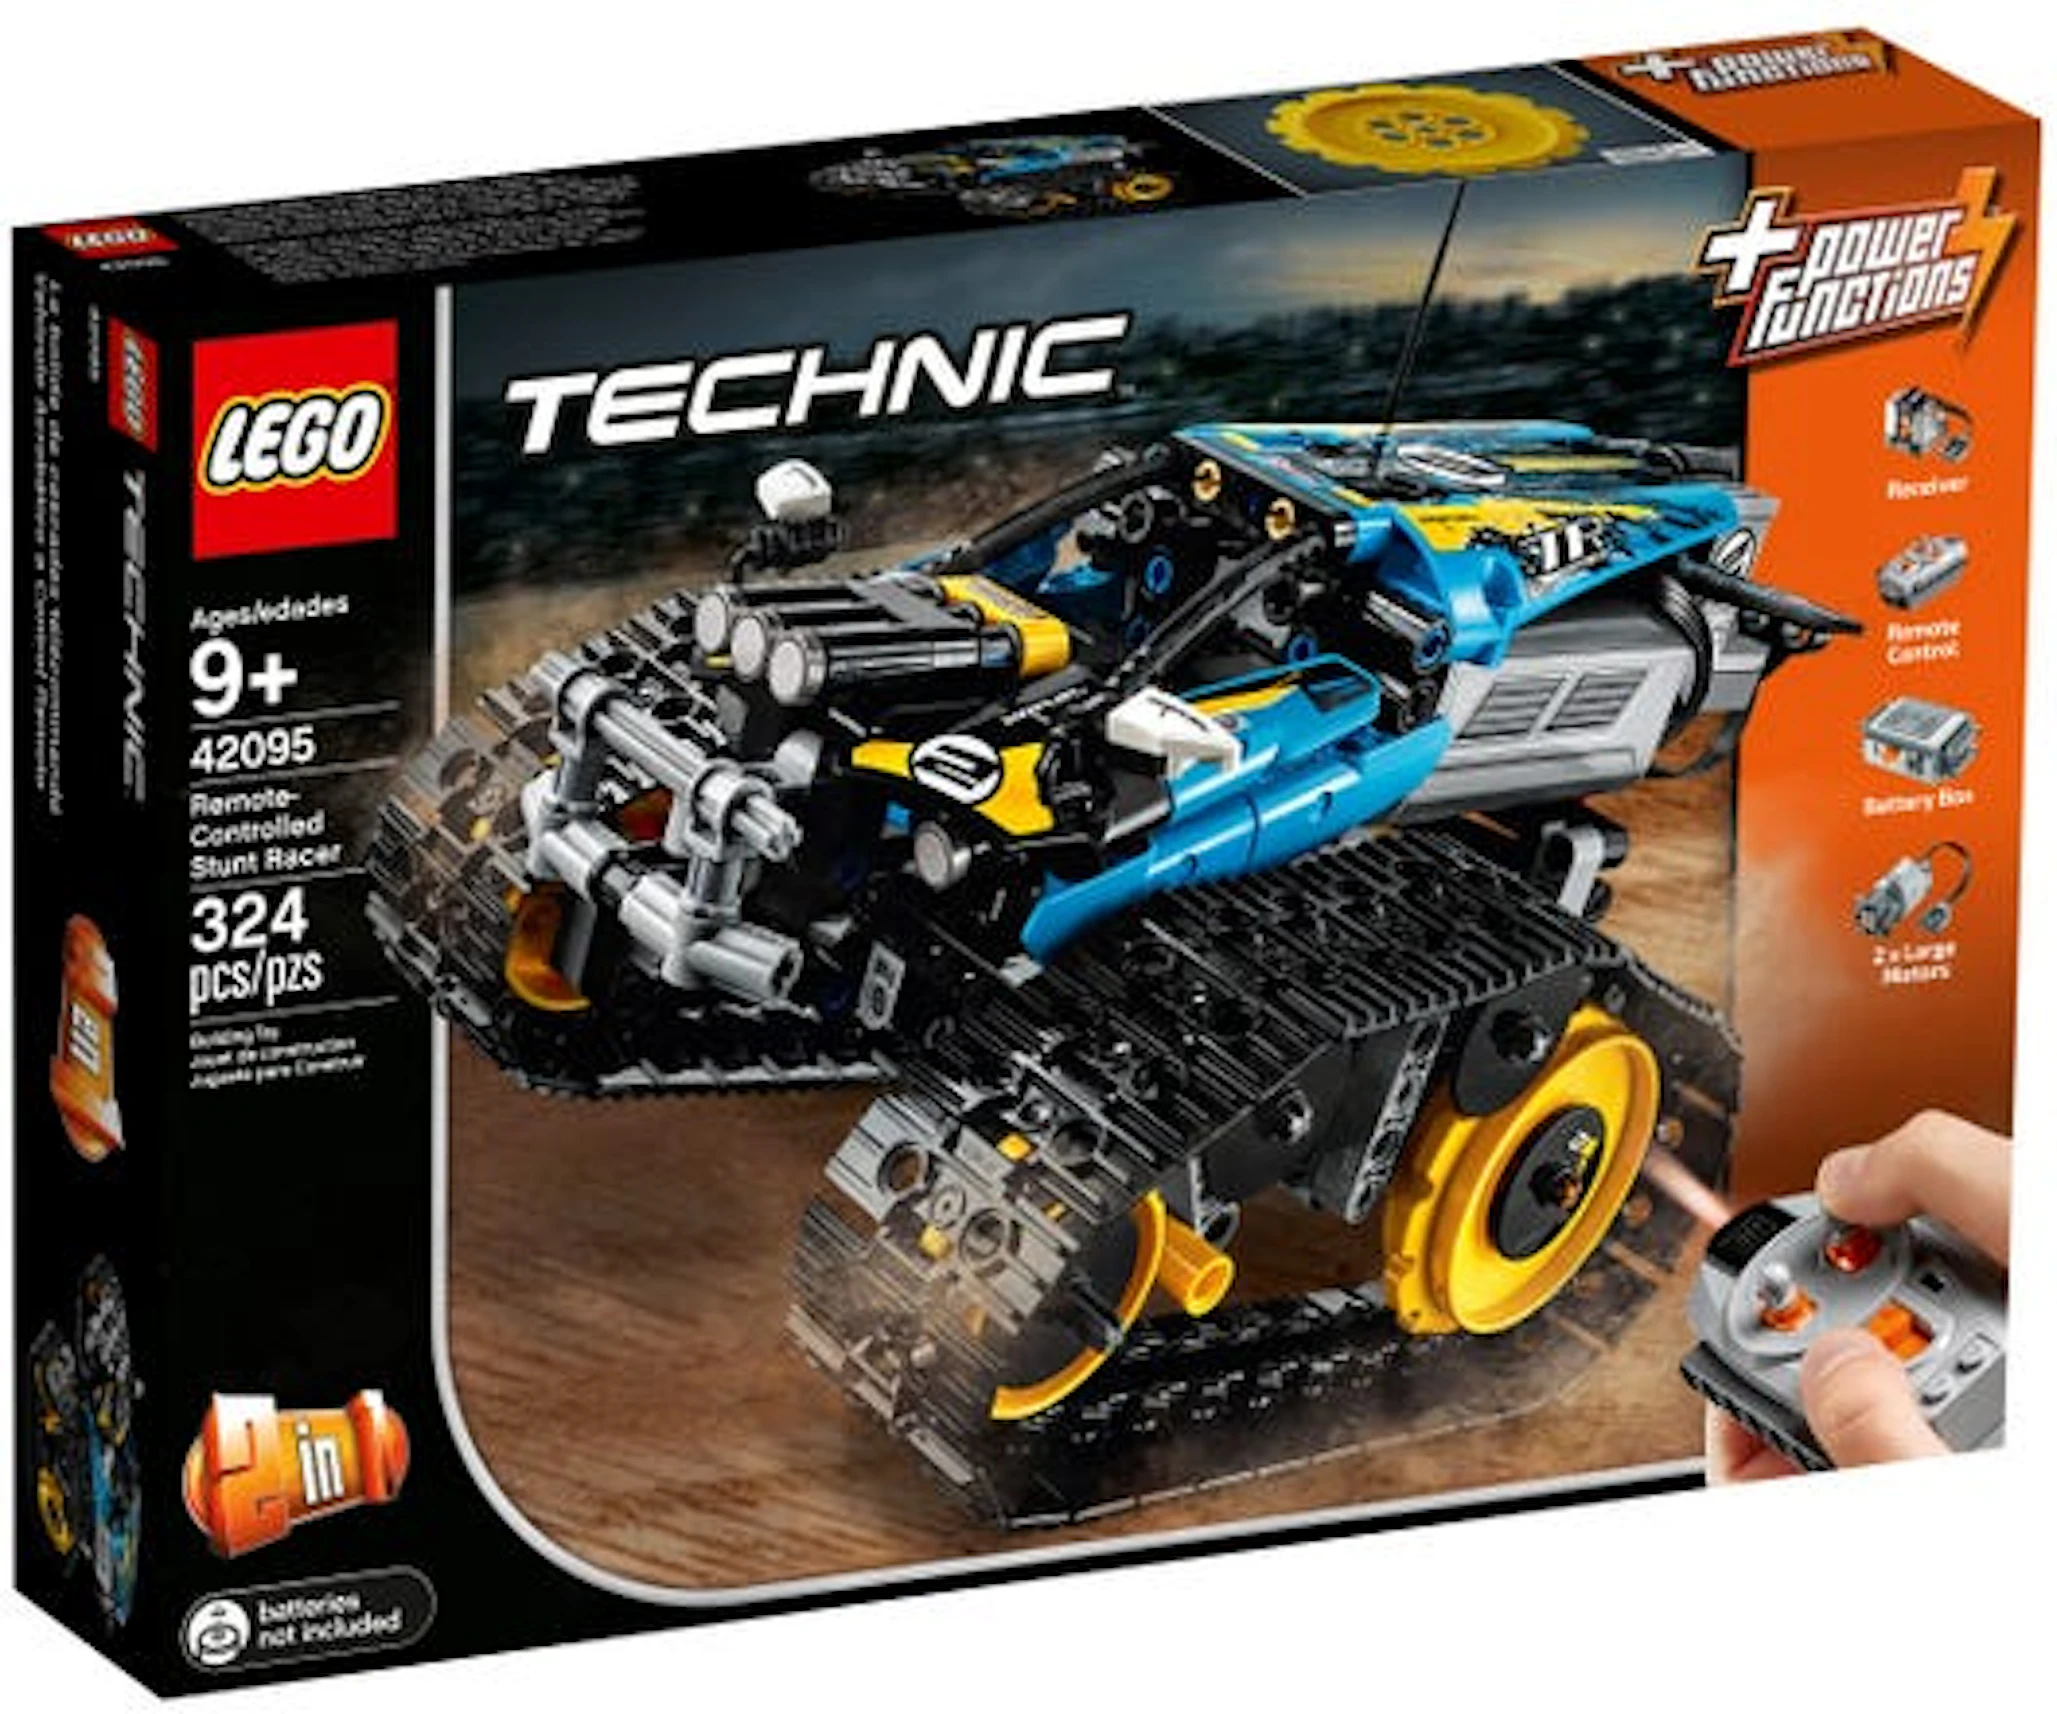 Weekendtas Gecomprimeerd Jong LEGO Technic Remote-Controlled Stunt Racer Set 42095 - US